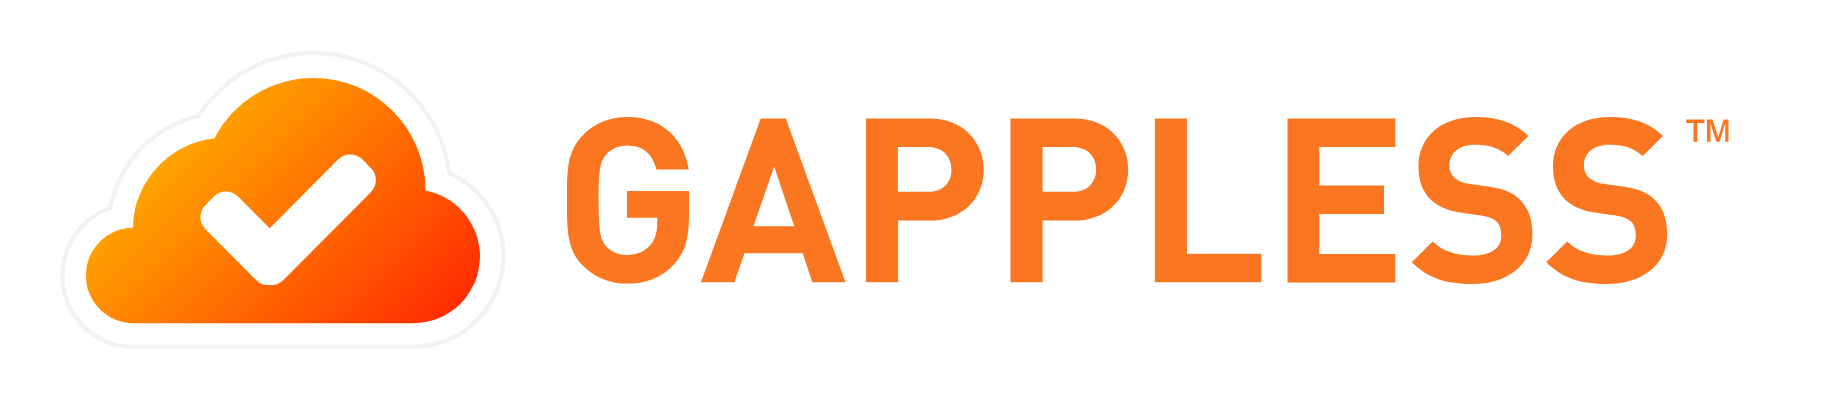 Gappless groeit het pand uit! logo